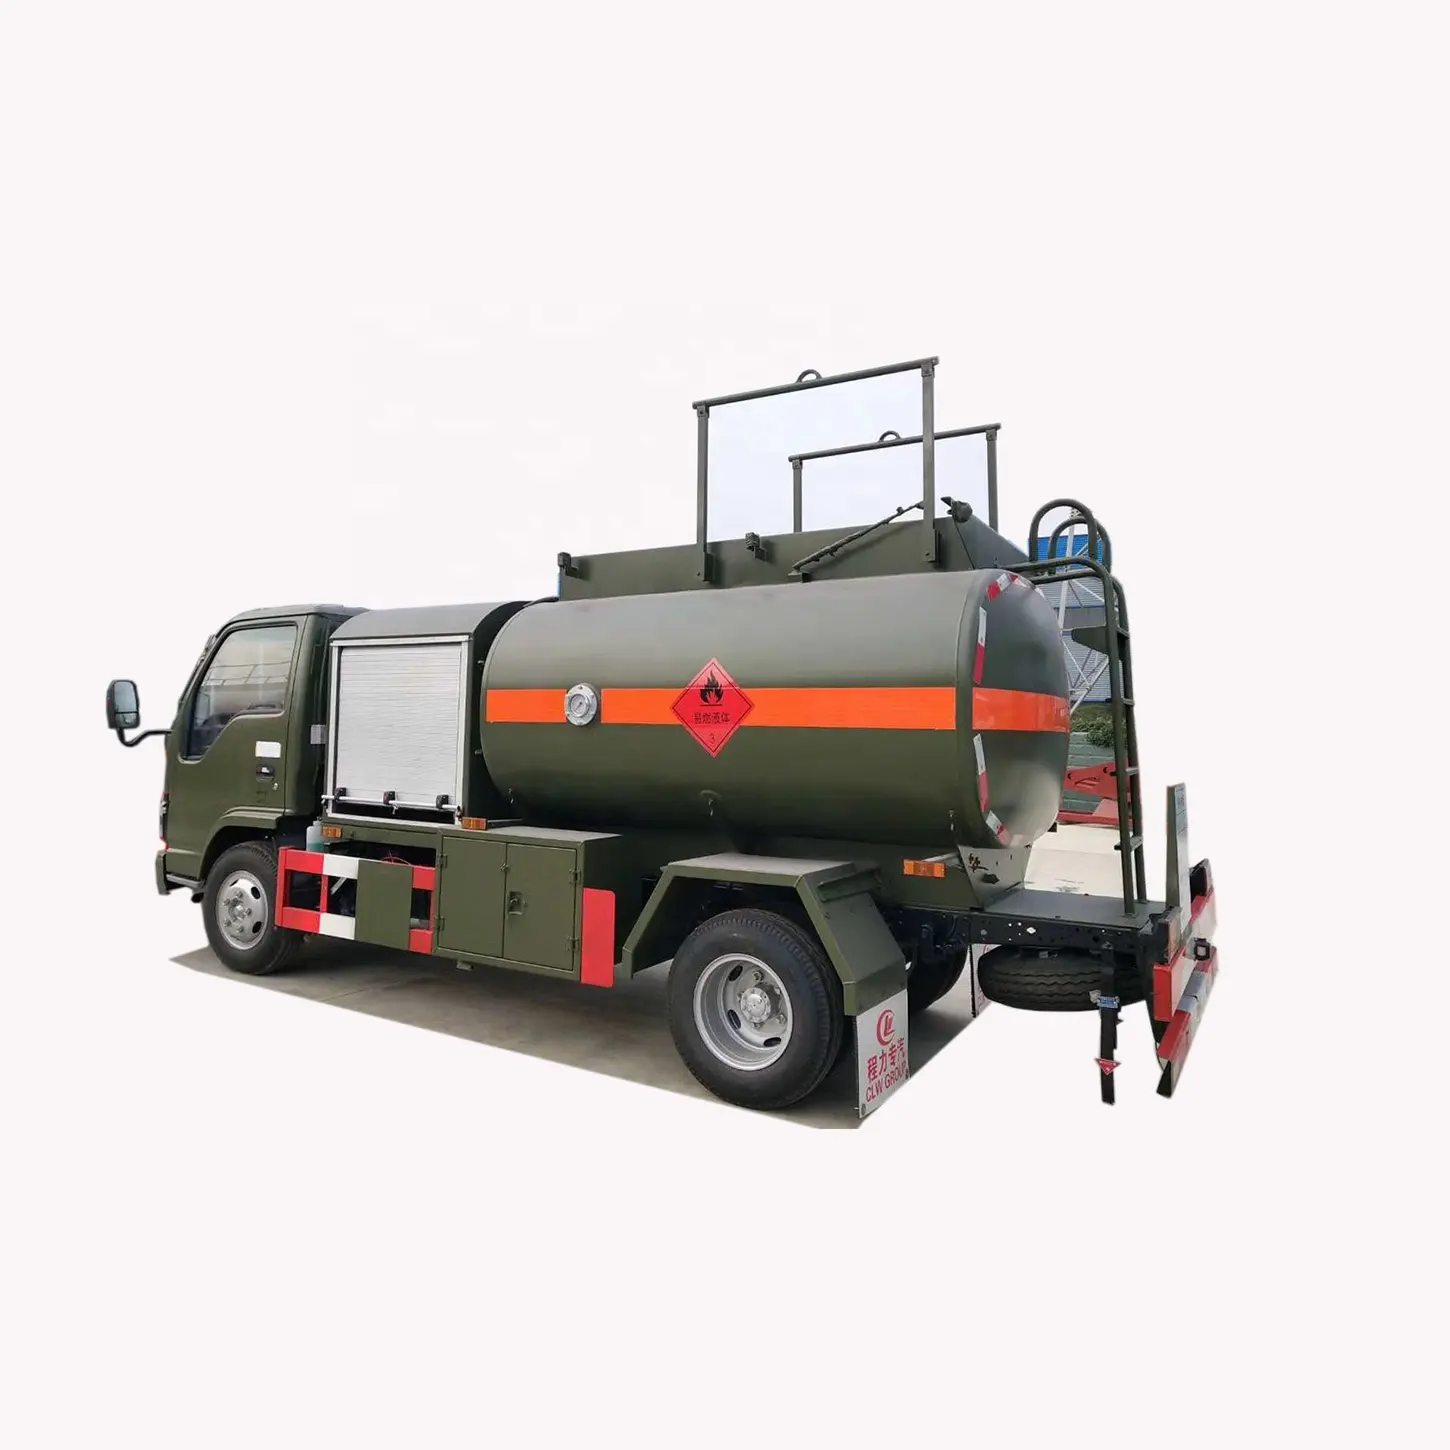 Высокое качество 5000 литров Jet A1 распределитель топлива грузовик 4X2 1SUZU авиационное топливо для грузовиков Мерседес Бенц